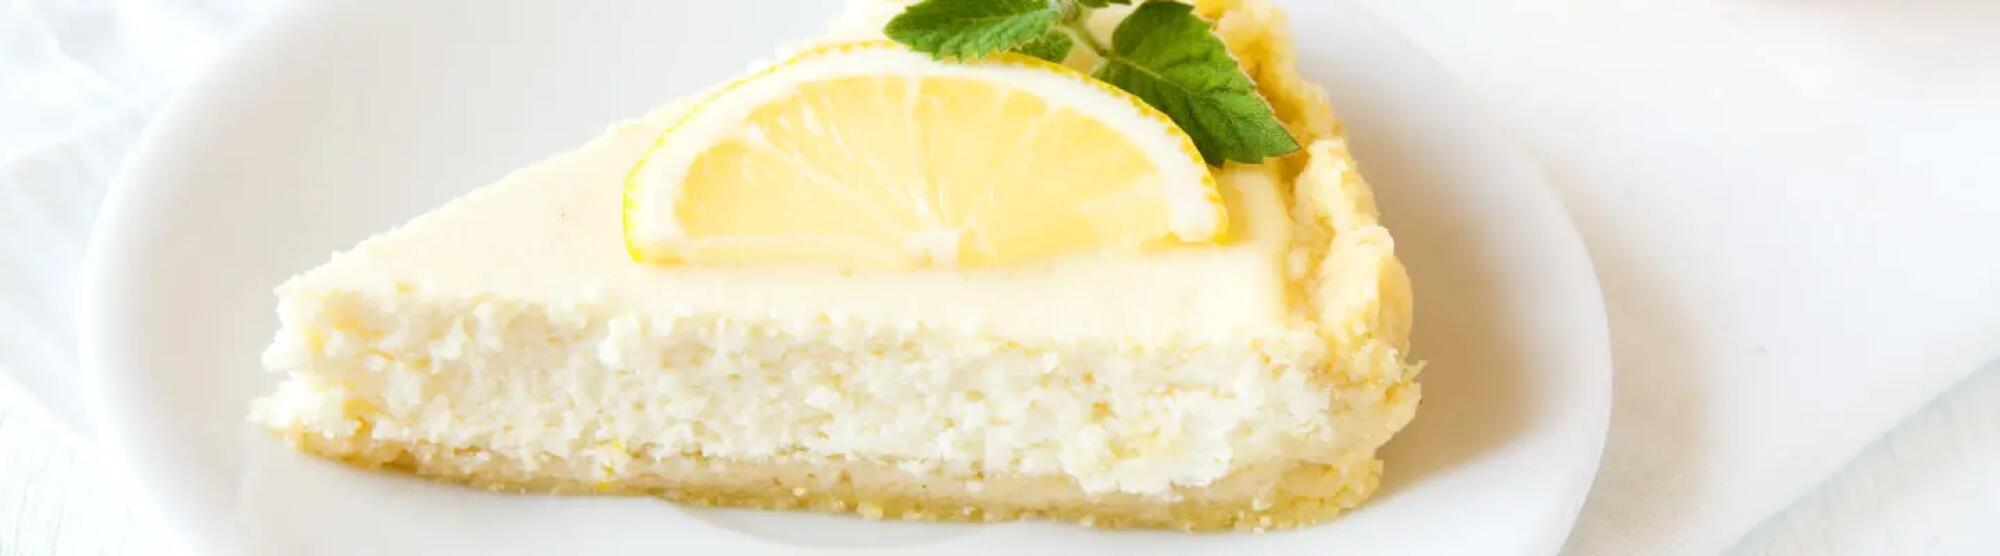 Recette : Cheesecake sans cuisson au citron